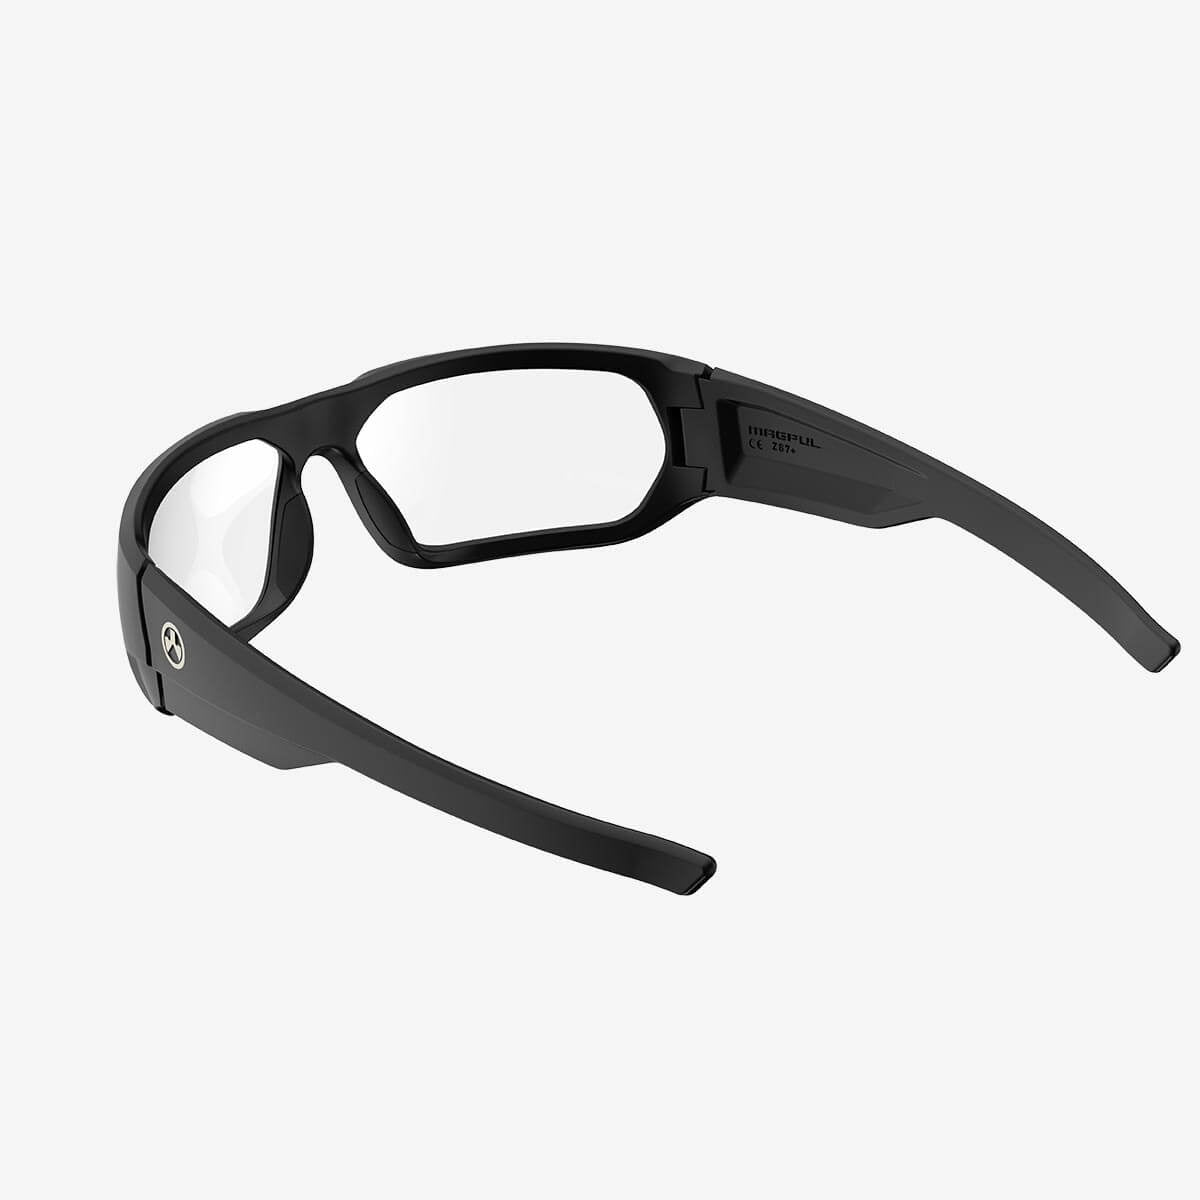 Magpul - Radius Eyewear - Black Frame, Clear Lens